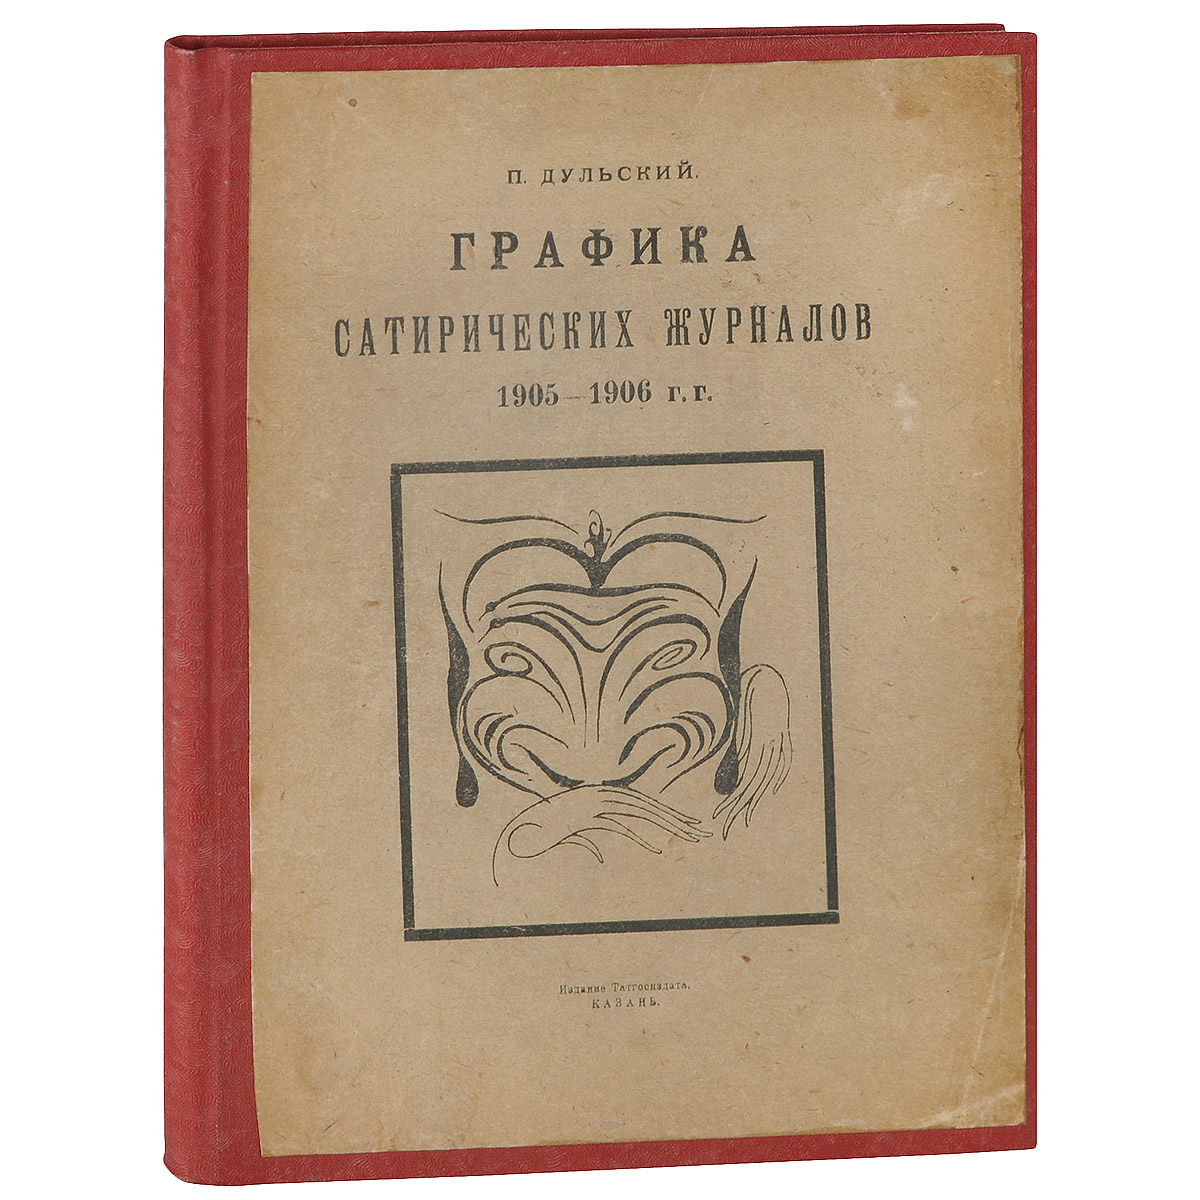 Графика сатирических журналов. 1905-1906 гг